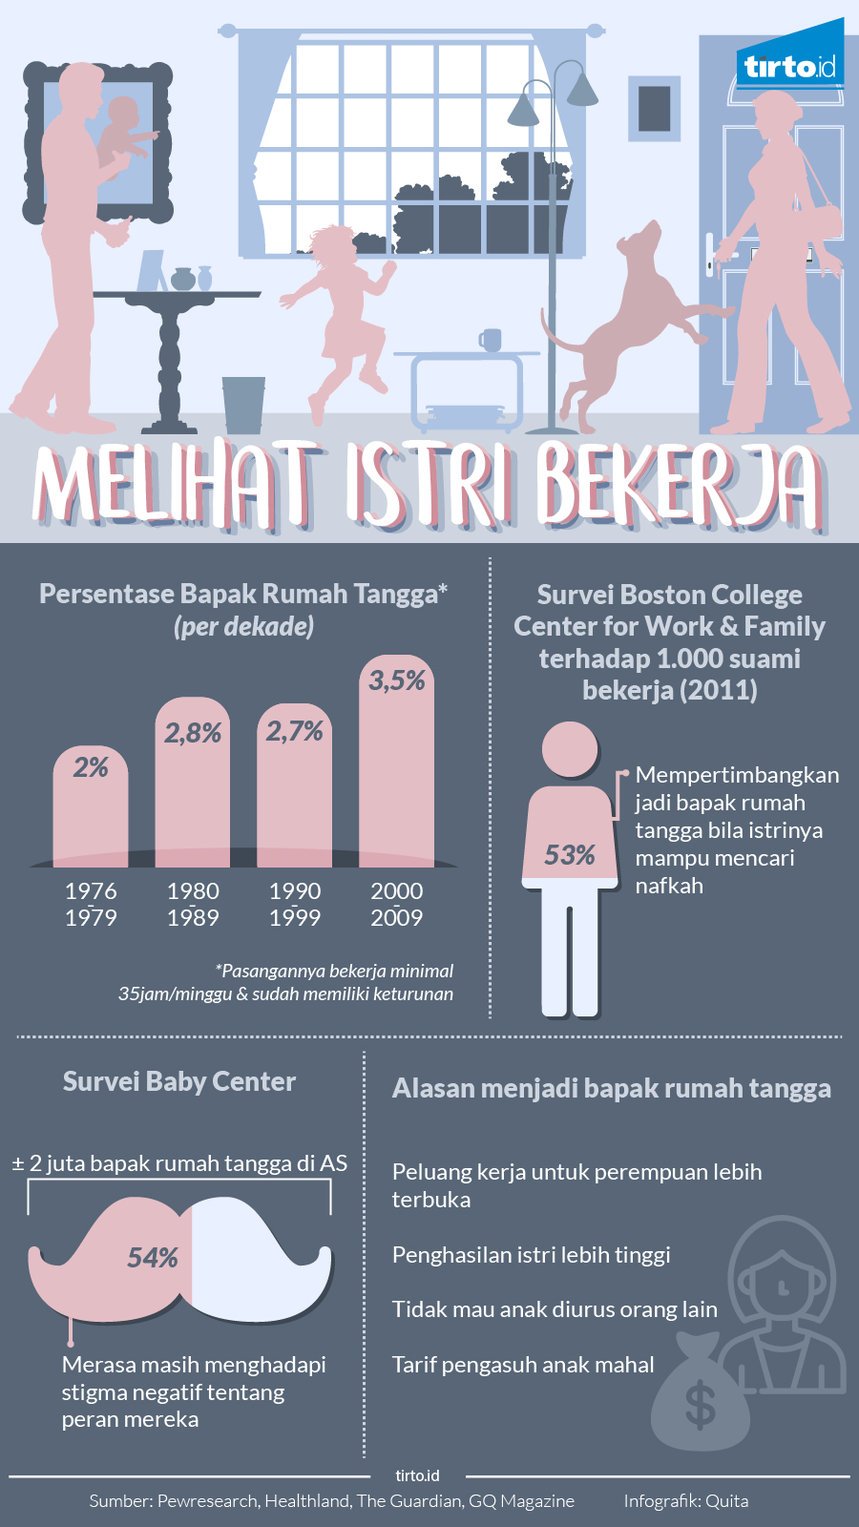 Infografik melihat istri bekerja